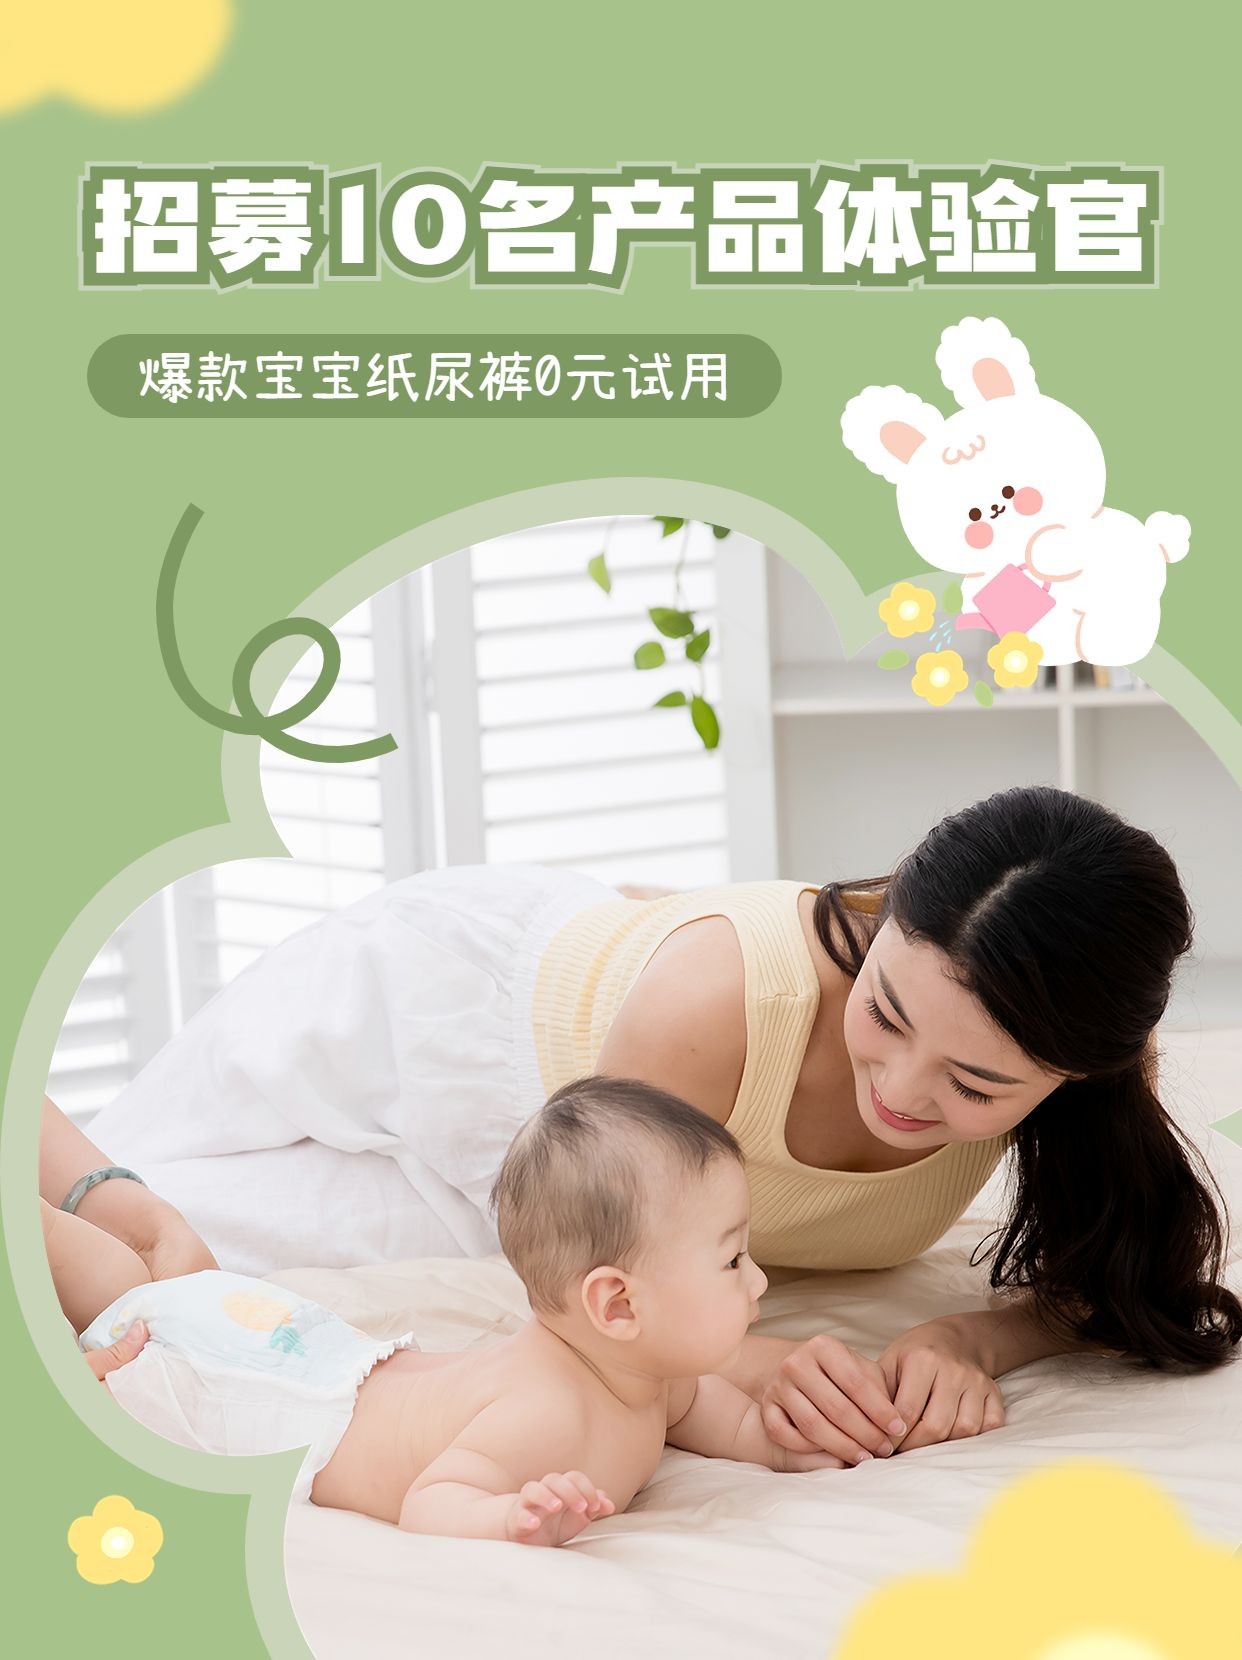 母婴粉丝互动福利0元试用活动宣传小红书封面套装预览效果